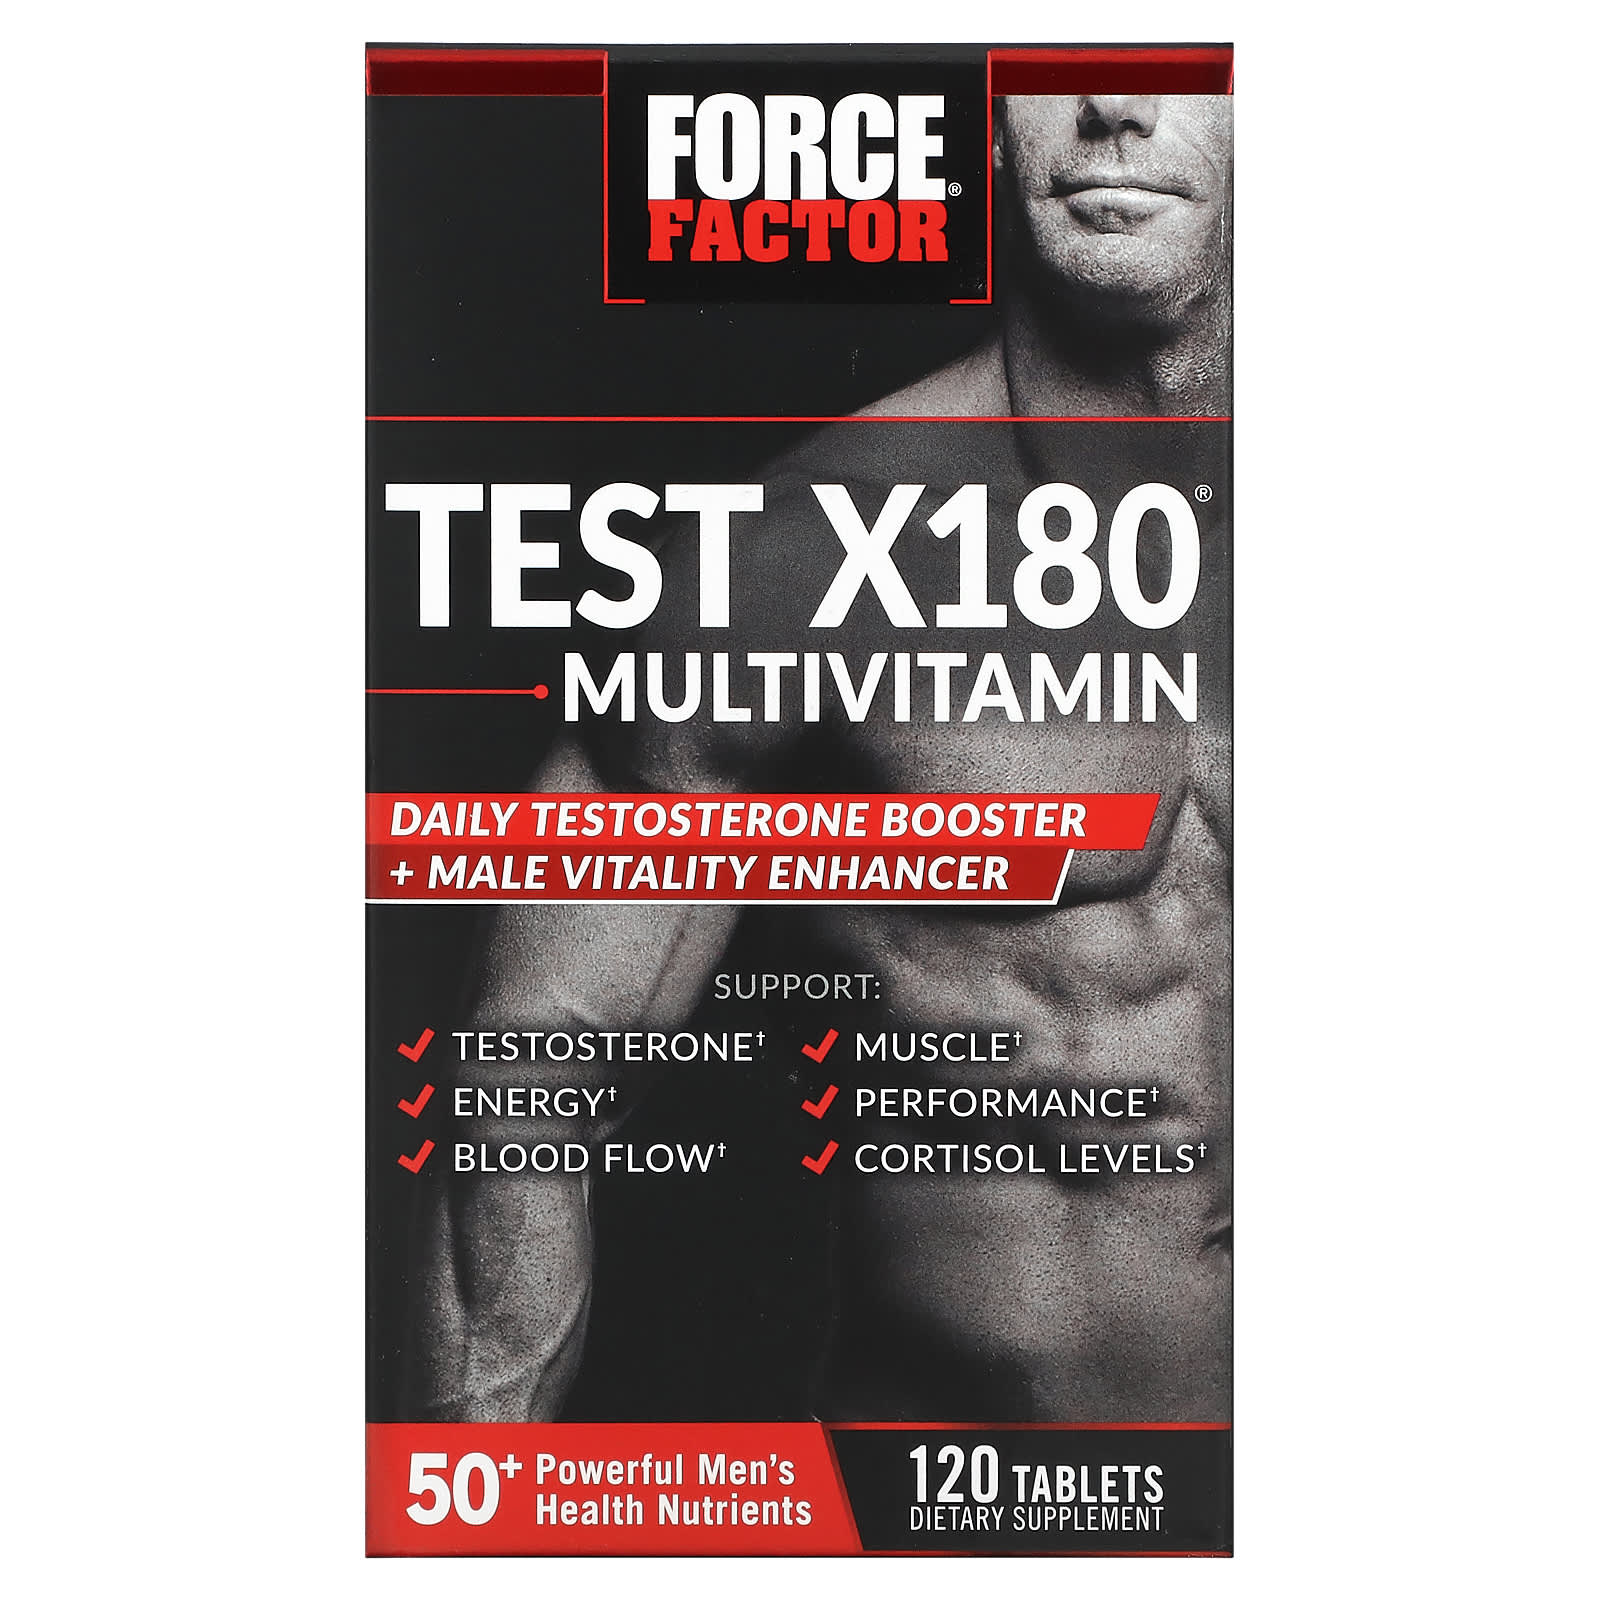 Мультивитамины и Усилитель Тестостерона Force Factor, 120 таблеток элитный бустер тестостерона force factor 45 таблеток